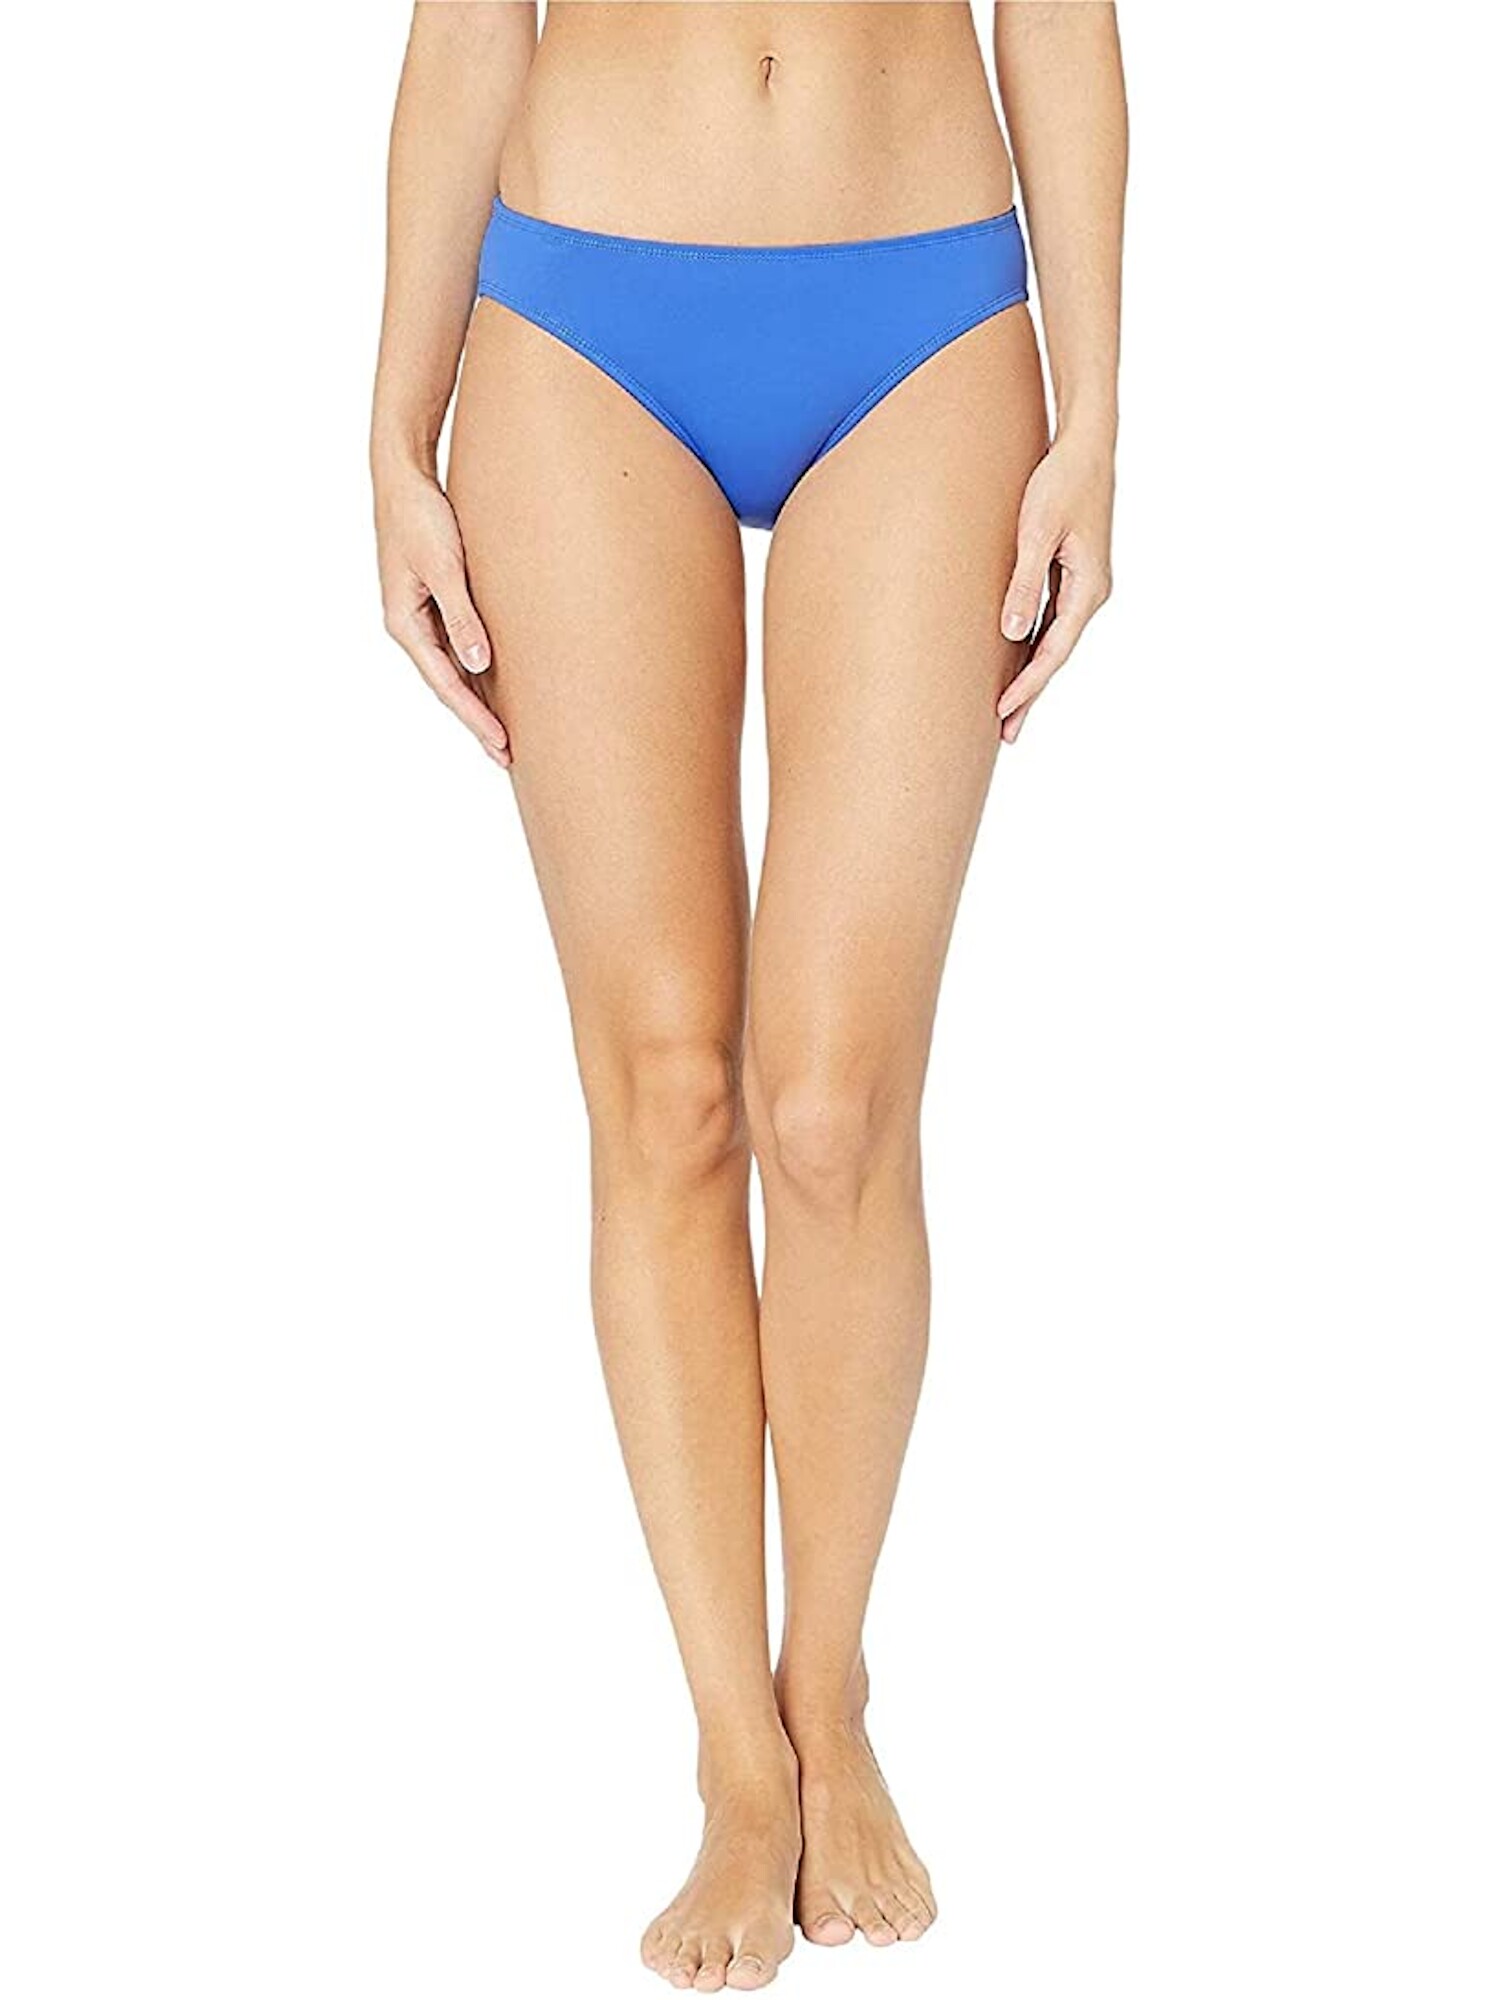 RALPH LAUREN Women's Blue Nylon Hipster Swimwear Bottom 16 - image 1 of 1